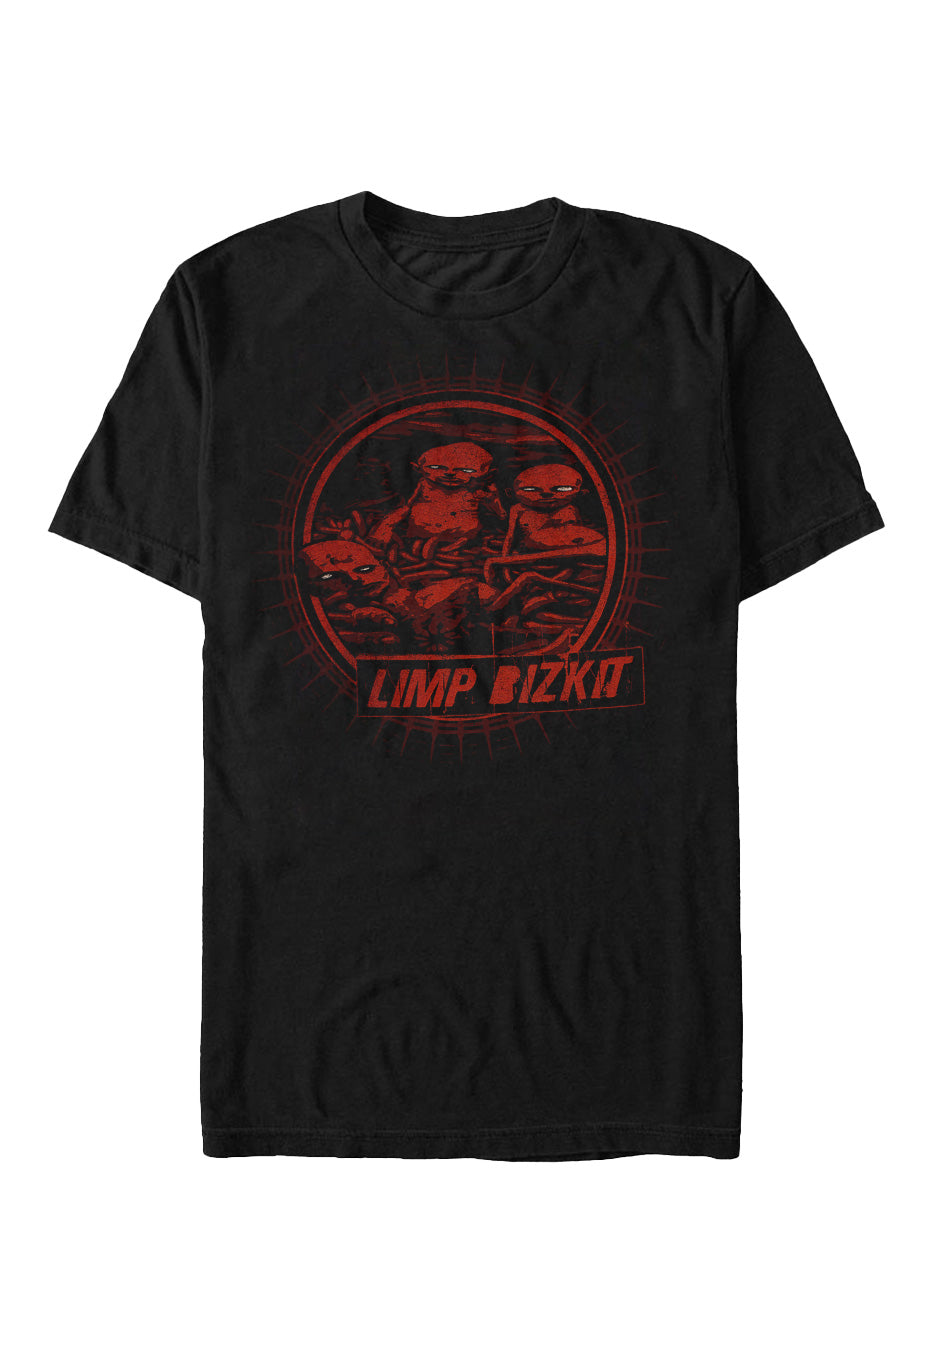 Limp Bizkit - Radial Cover - T-Shirt